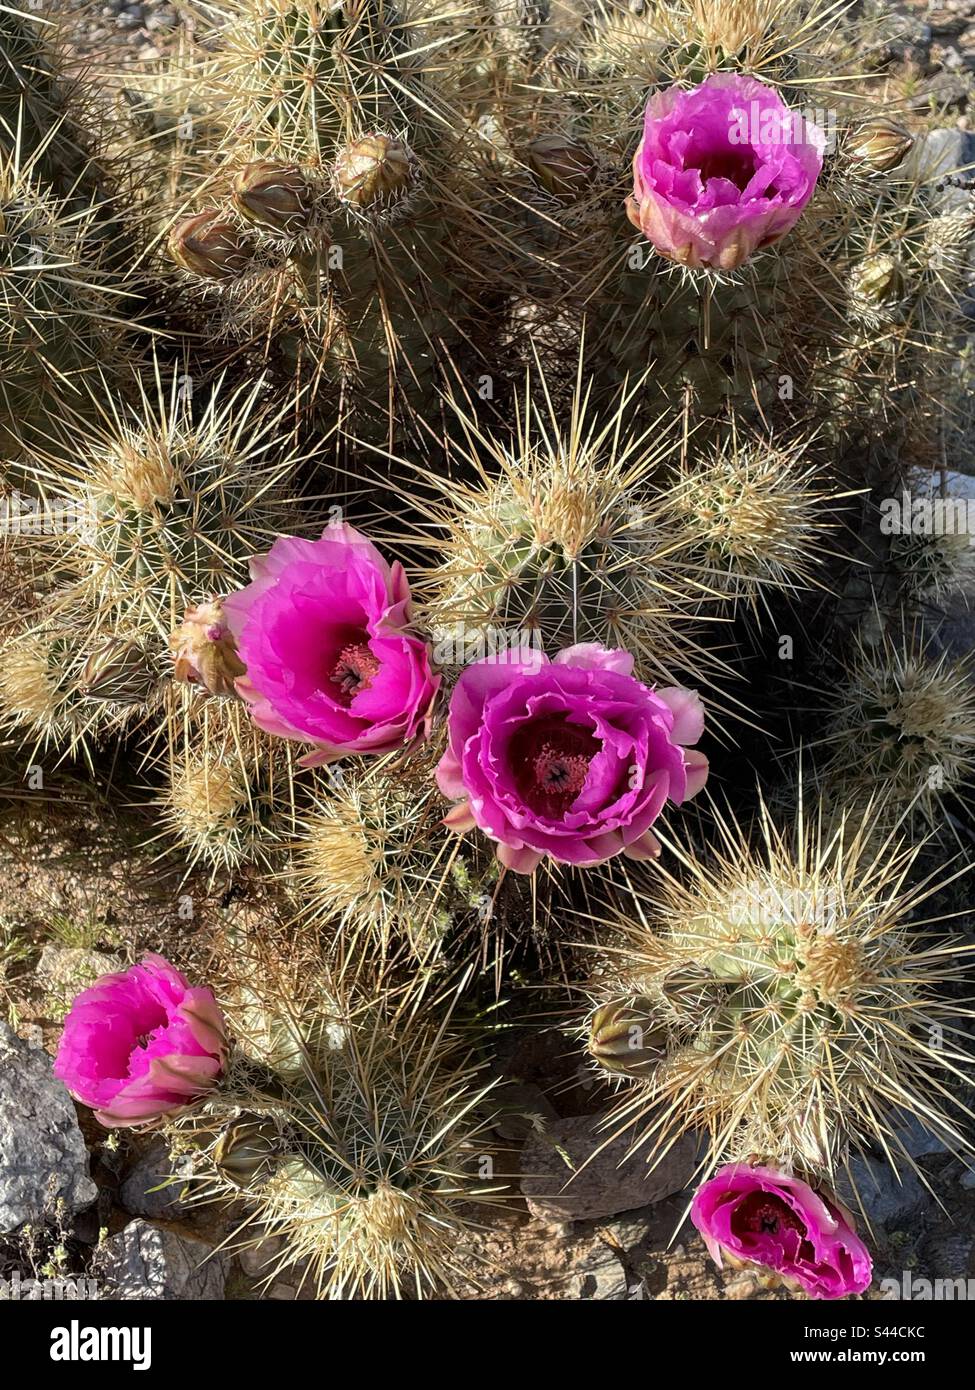 Cactus en fleurs, cactus de hérisson de fraise, fleurs roses, longues épines, désert de Sonora, Phoenix Mountains Preserve, Arizona Banque D'Images